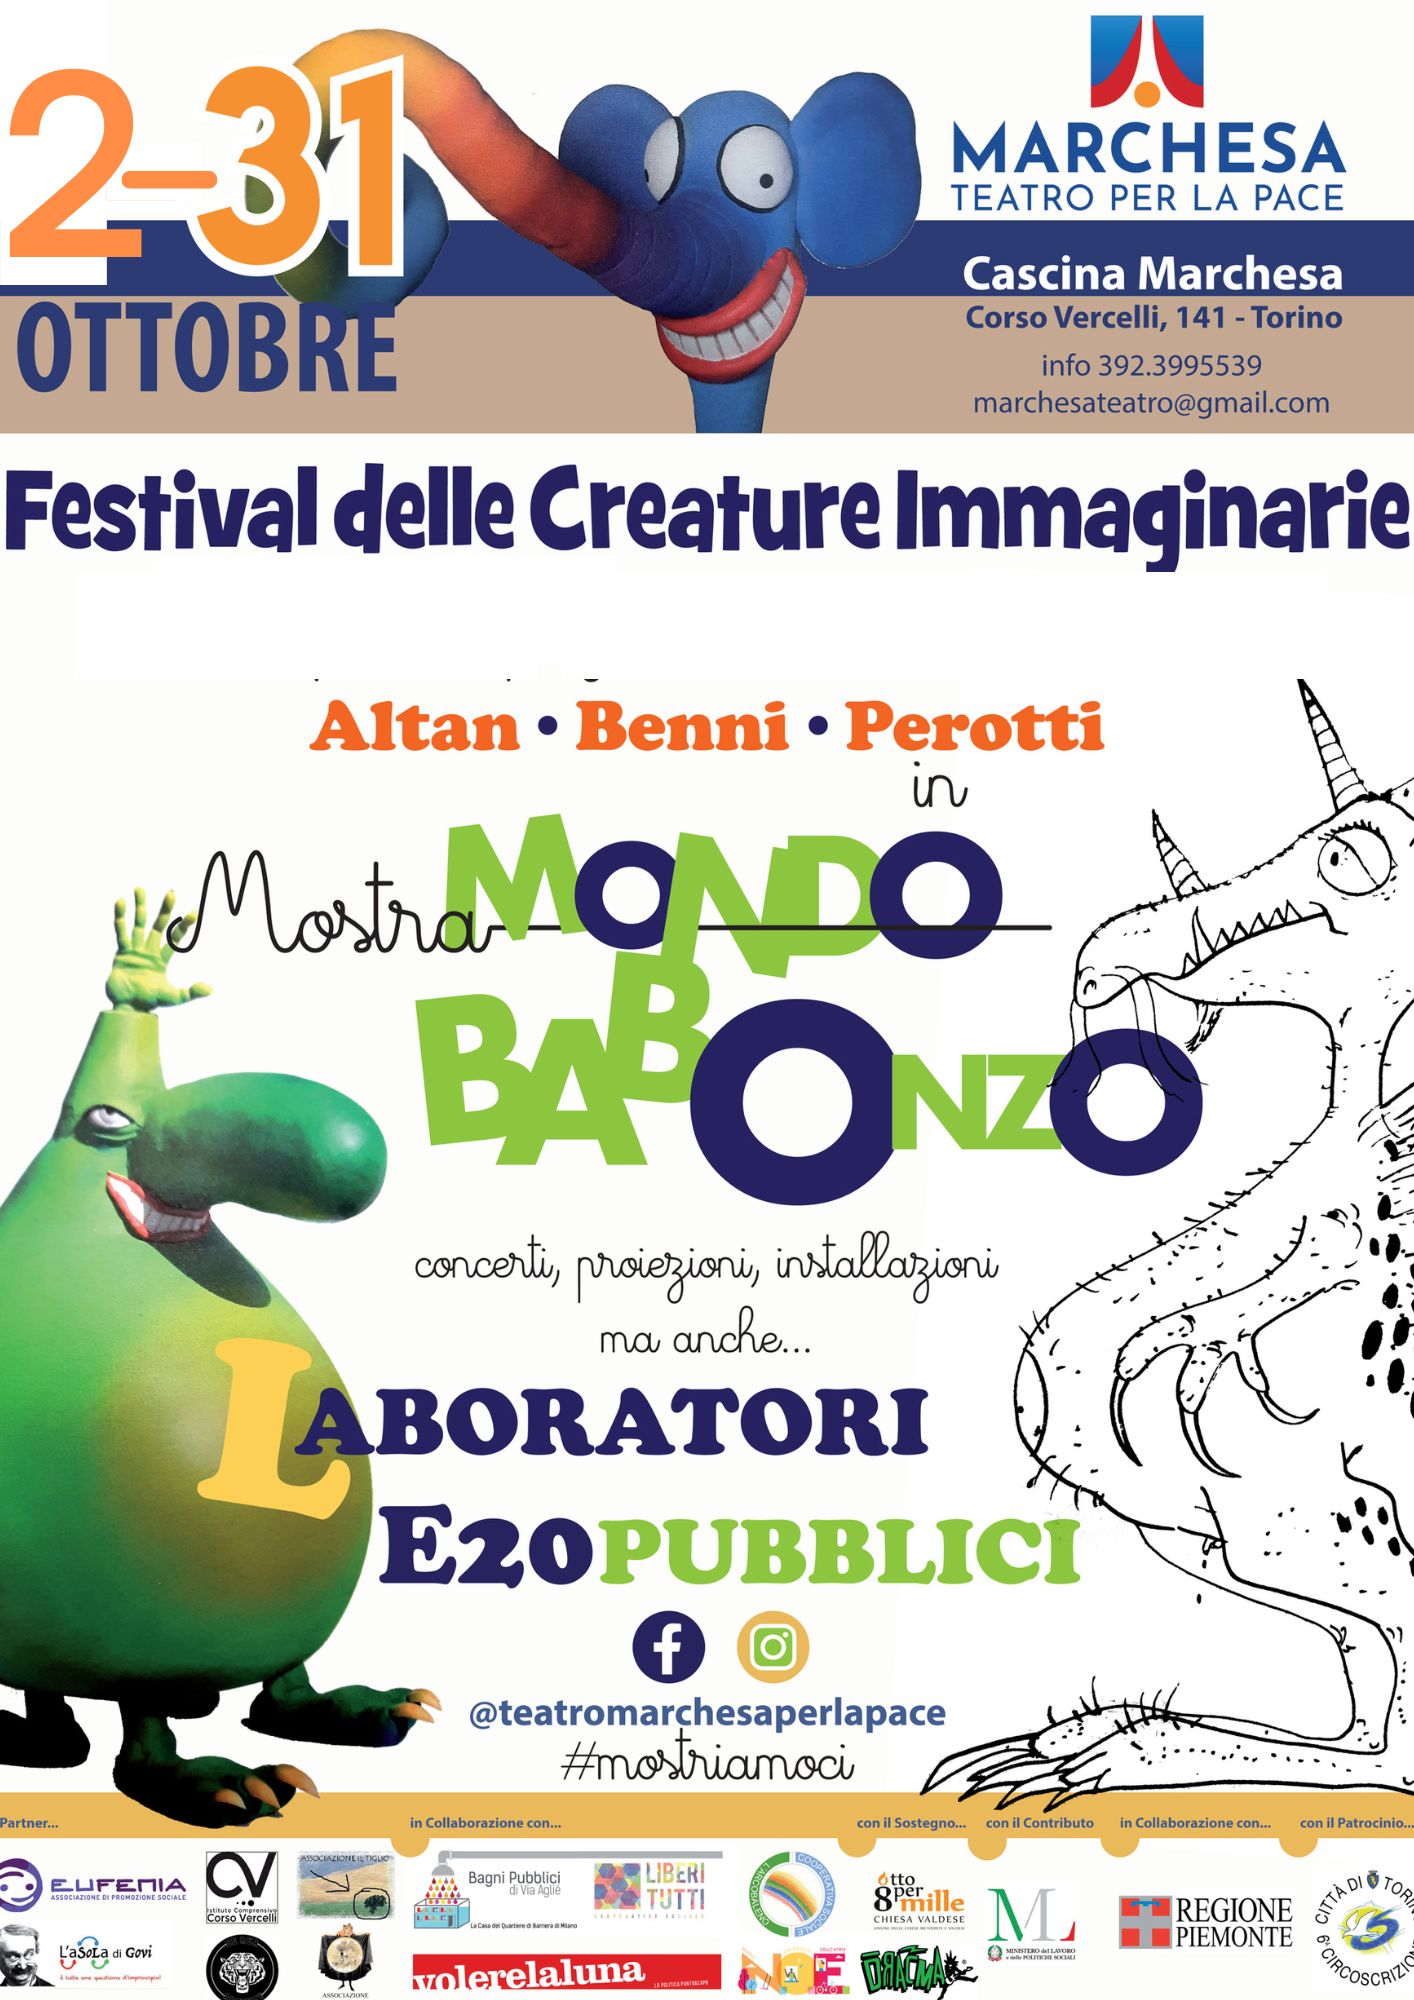 Mondo Babonzo: festival teatrale per bambini e ragazzi